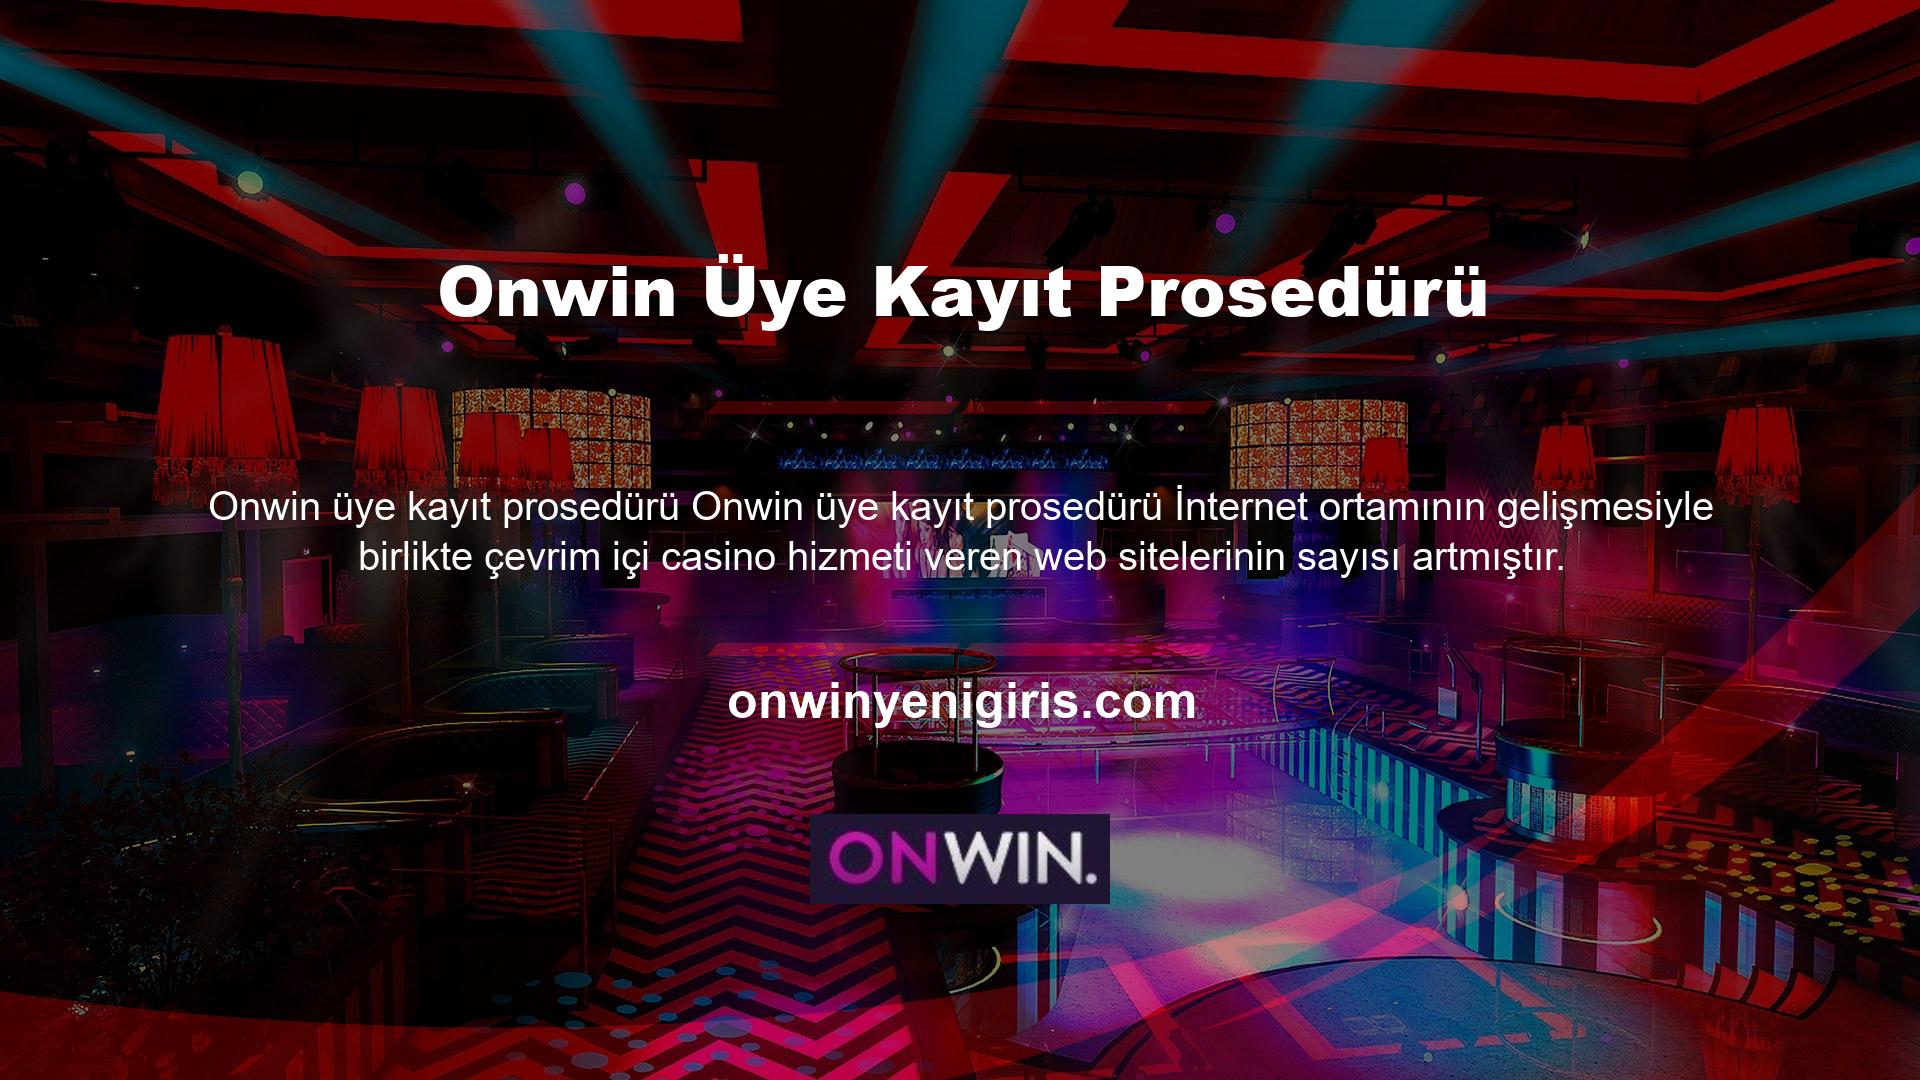 Onwin web sitesi, bahis piyasasının en iyilerinden biridir ve son birkaç gündür büyük ilgi görmektedir